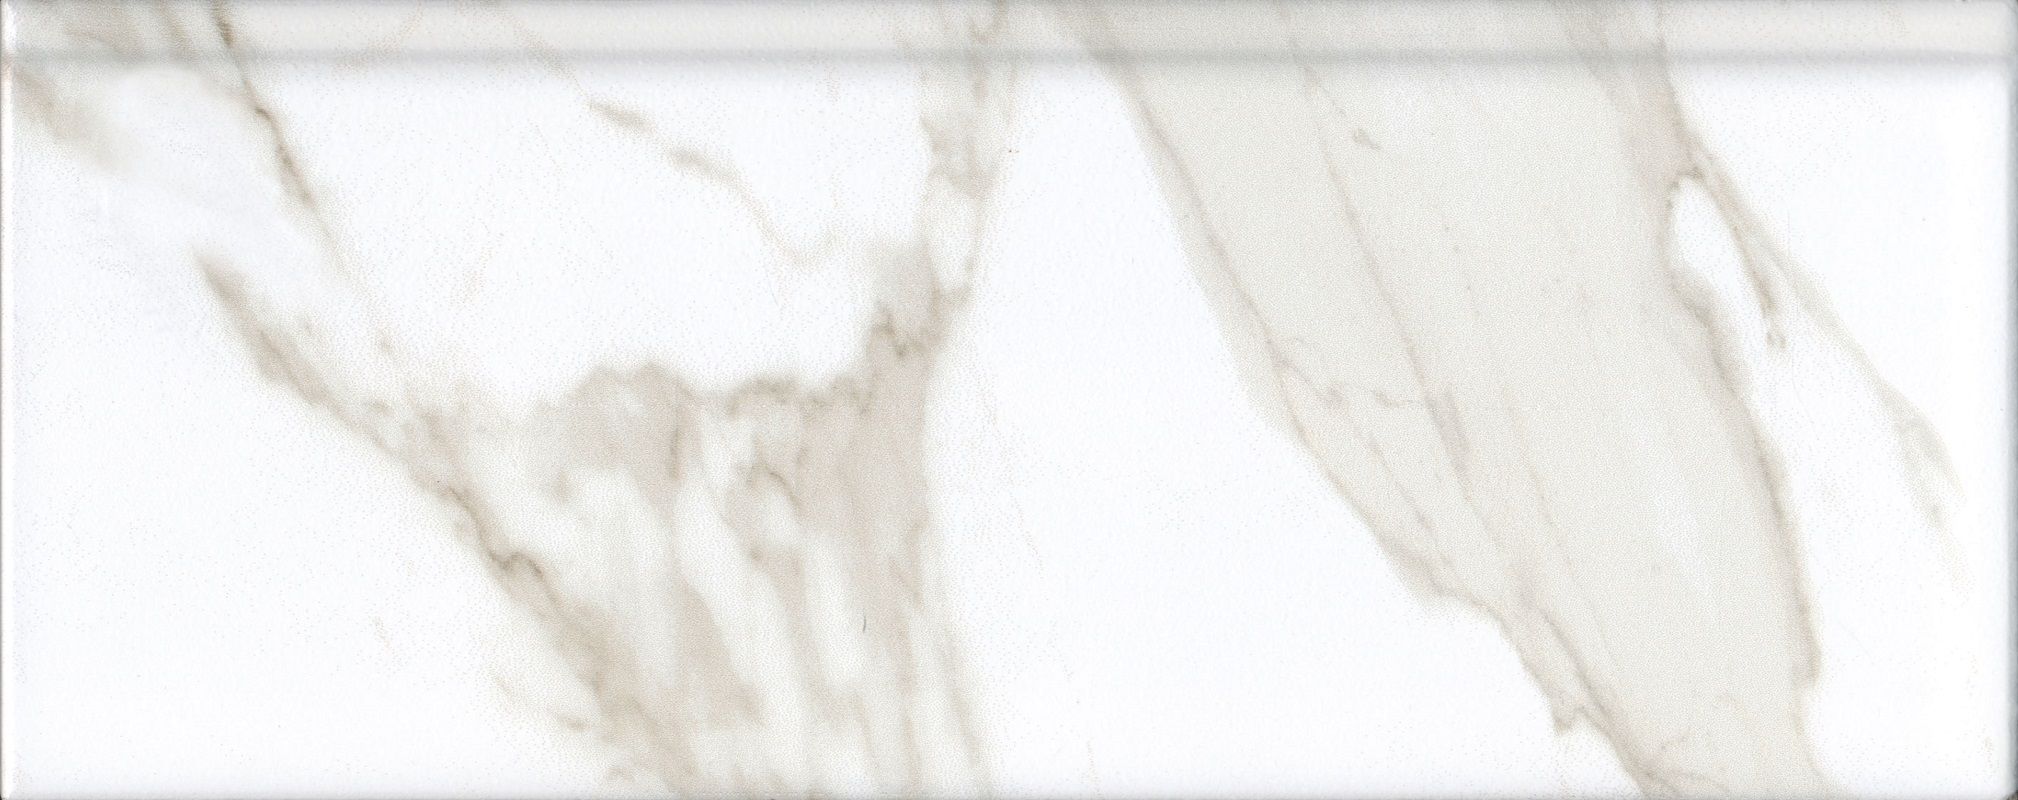 Плинтус керамический Kerama Marazzi Алентежу белый матовый обрезной 30x12 см, в упак 9 штук керамическая плитка kerama marazzi bda014r марсо розовый обрезной бордюр 30x12 цена за штуку